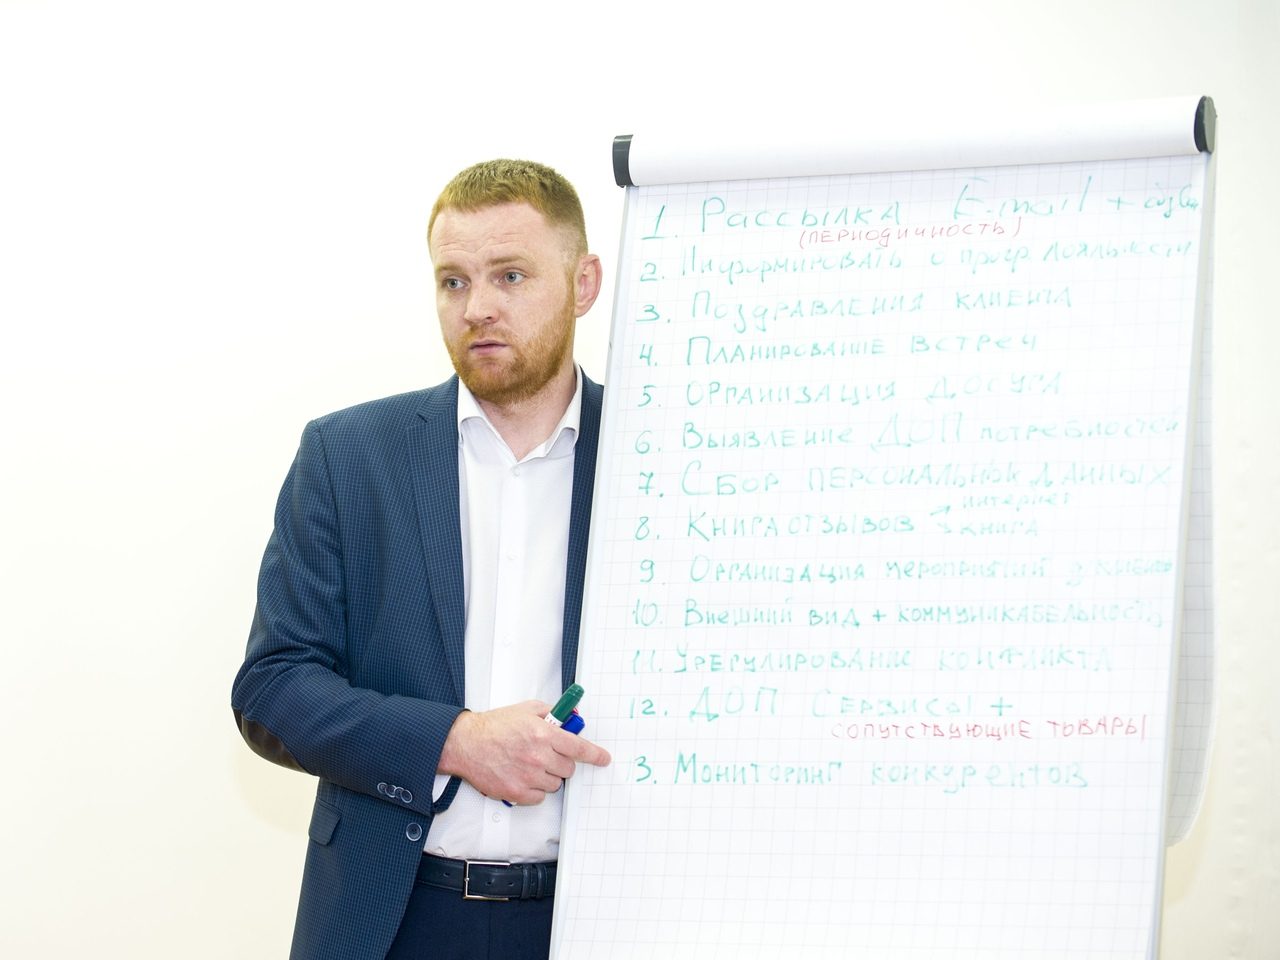 В Кирове пройдет бесплатный мастер-класс по управлению стартап-проектом